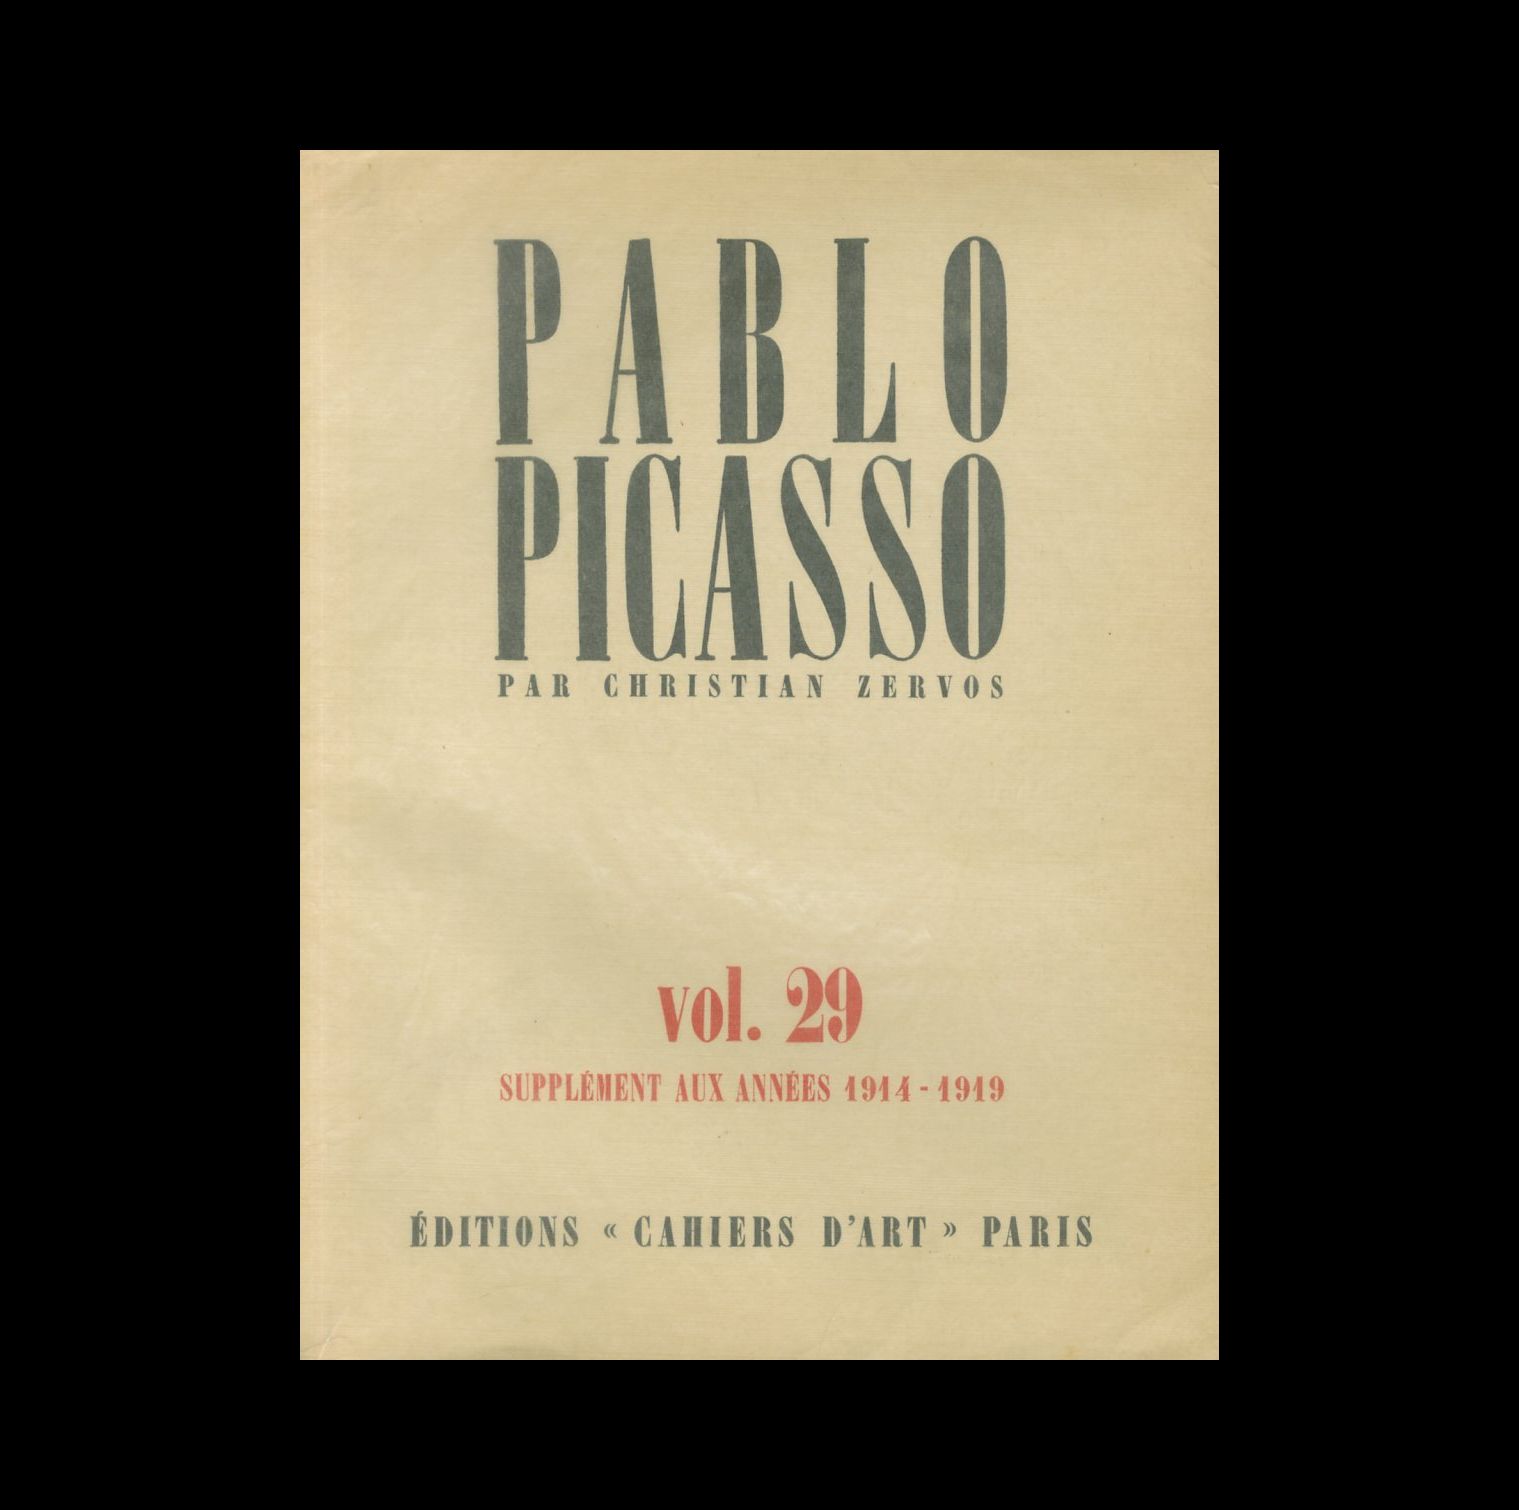 「PABLO PICASSO PAR CHRISTIAN ZERVOS VOL. 29 (XXIX):OEUVRES DE 1914 A 1919 / PABLO PICASSO」メイン画像